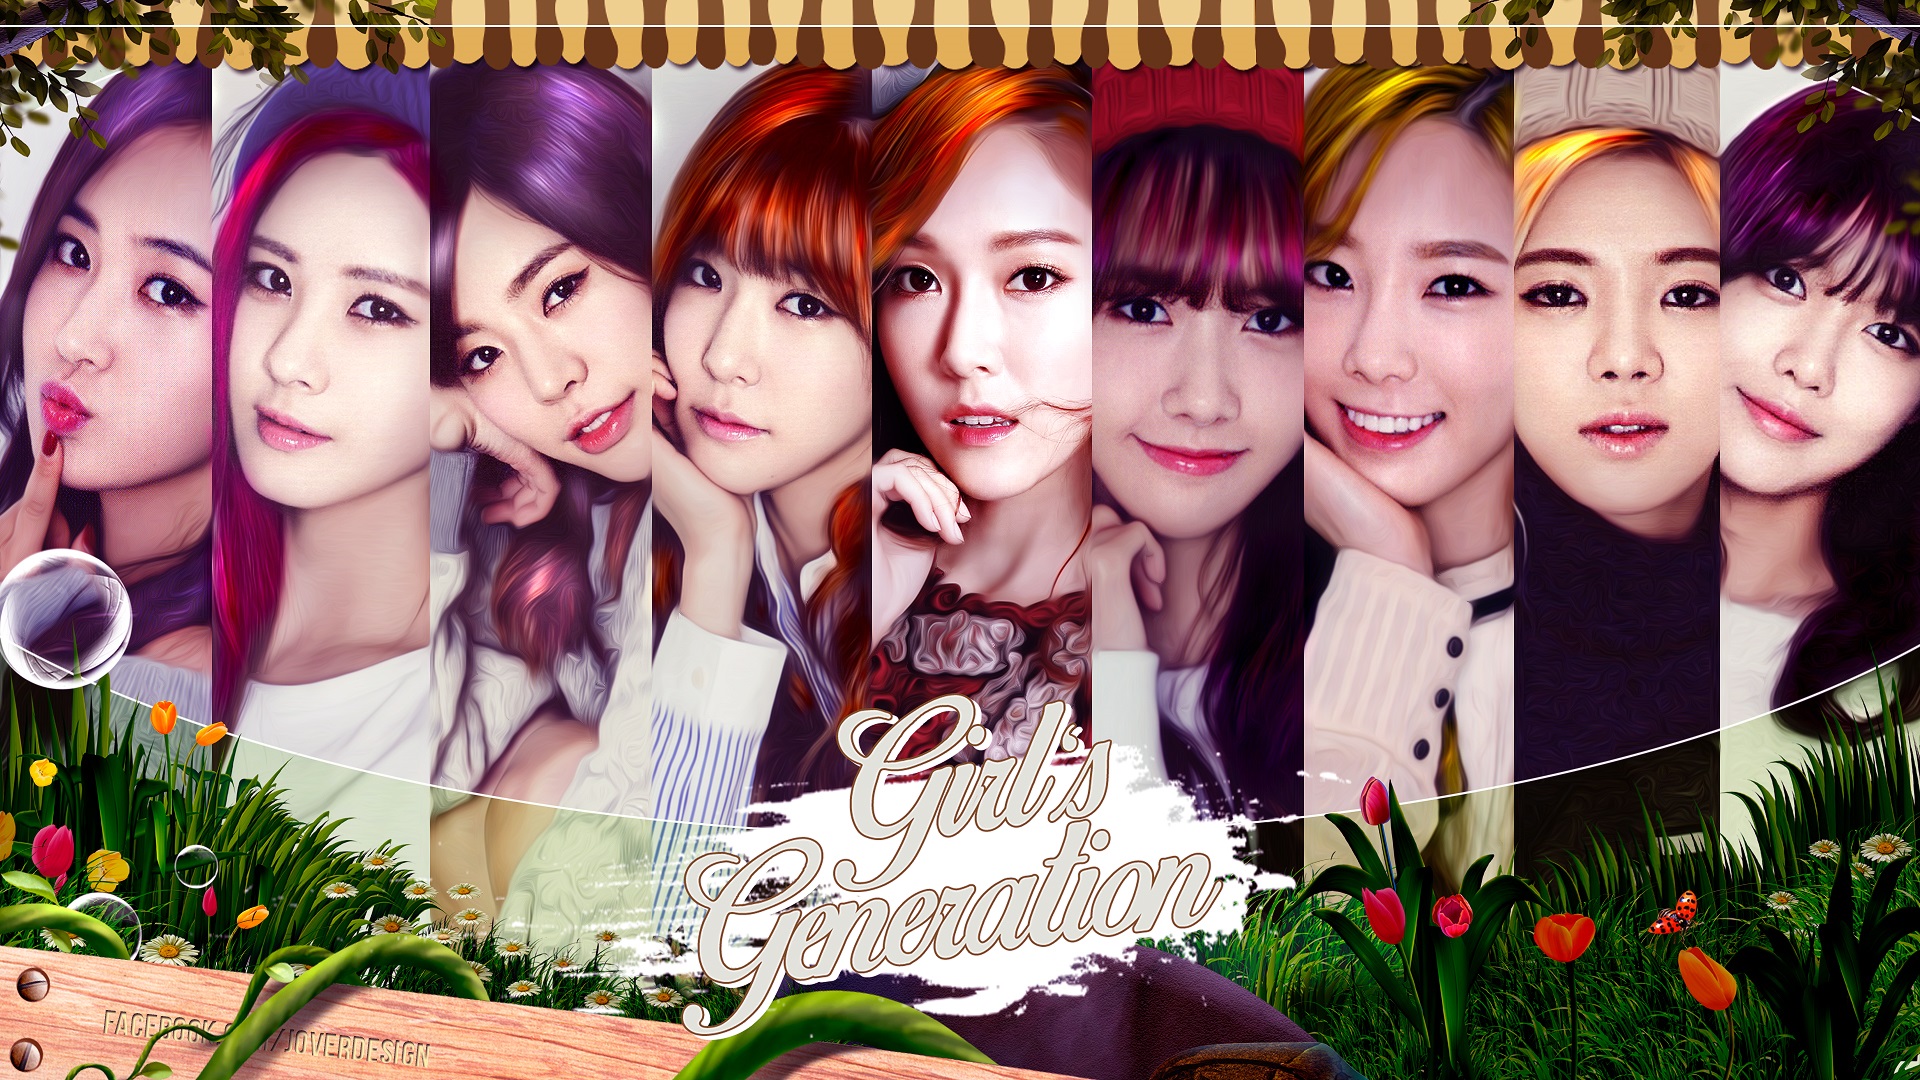 45+] Girls Generation Wallpaper 2015 - WallpaperSafari